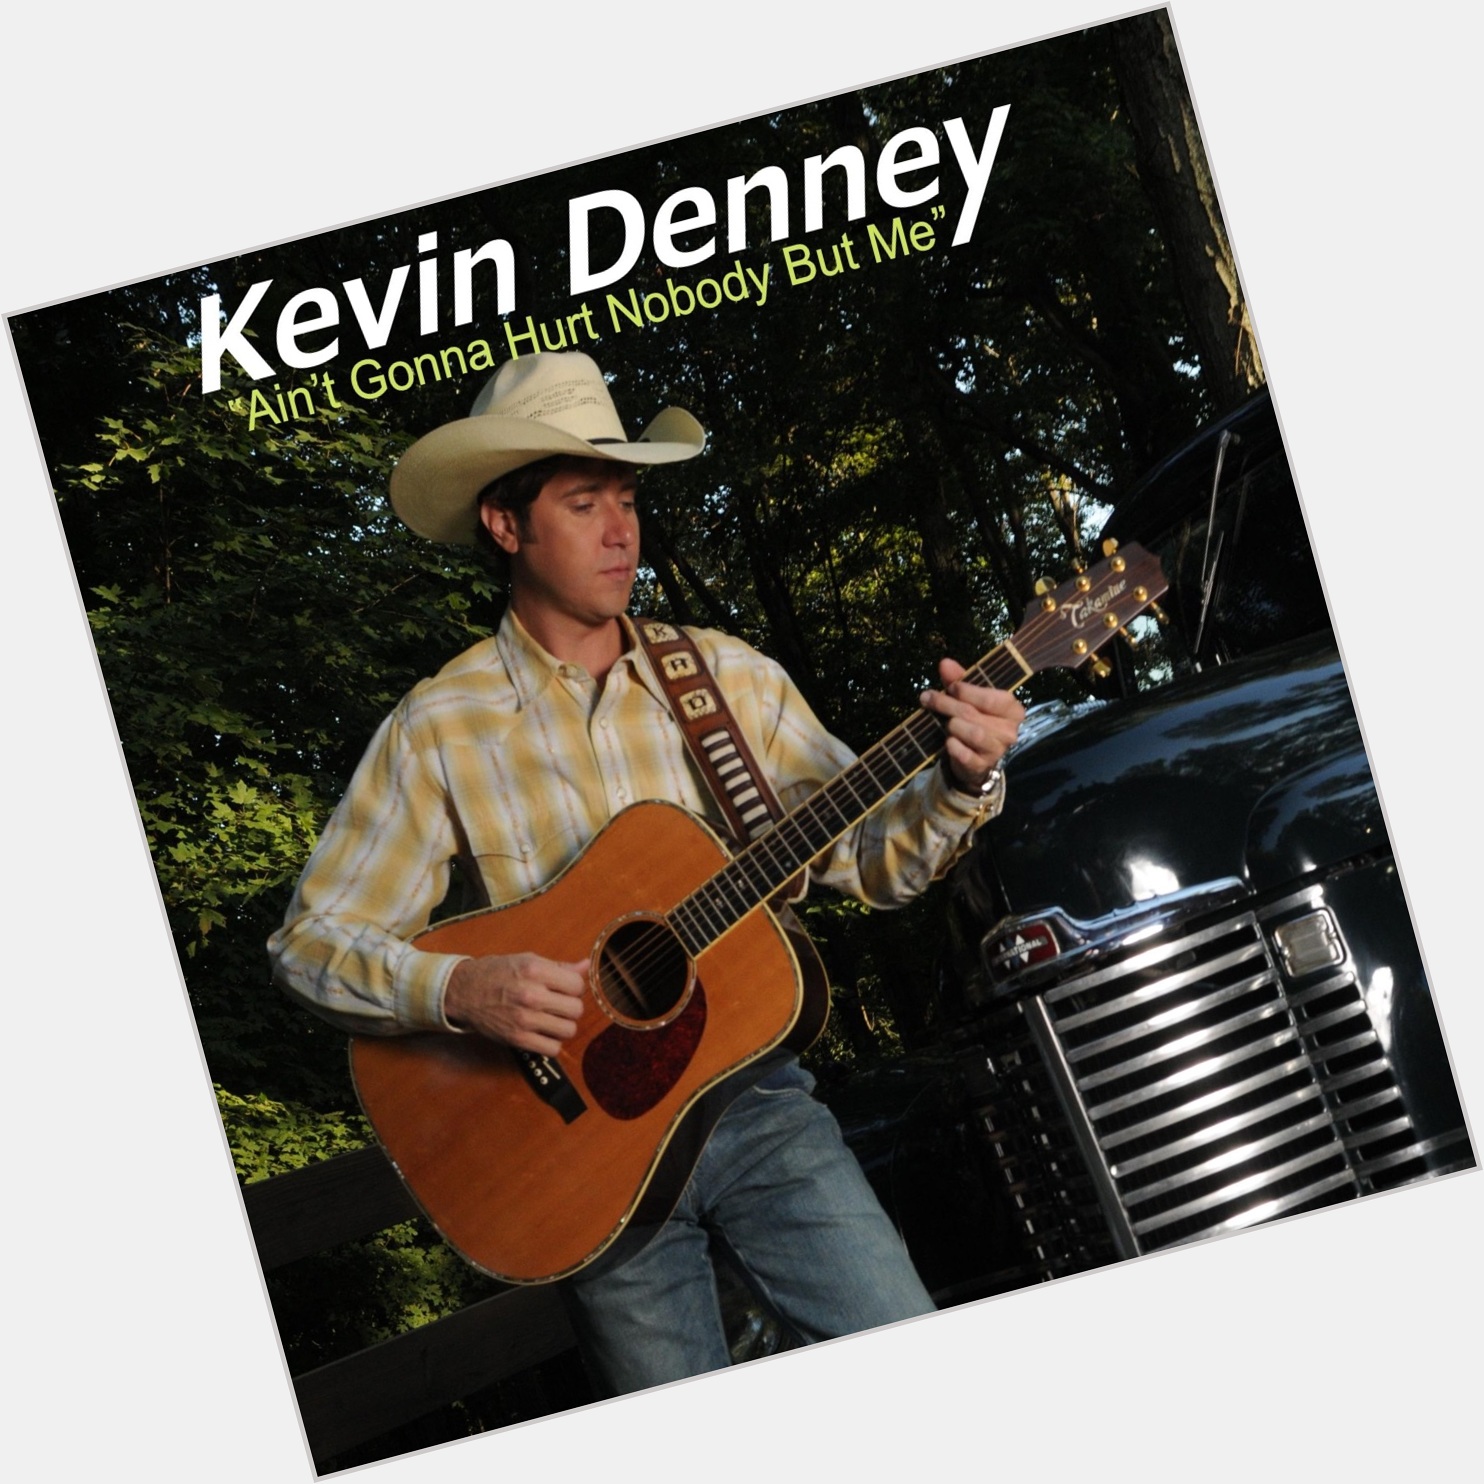 Kevin Denney body 3